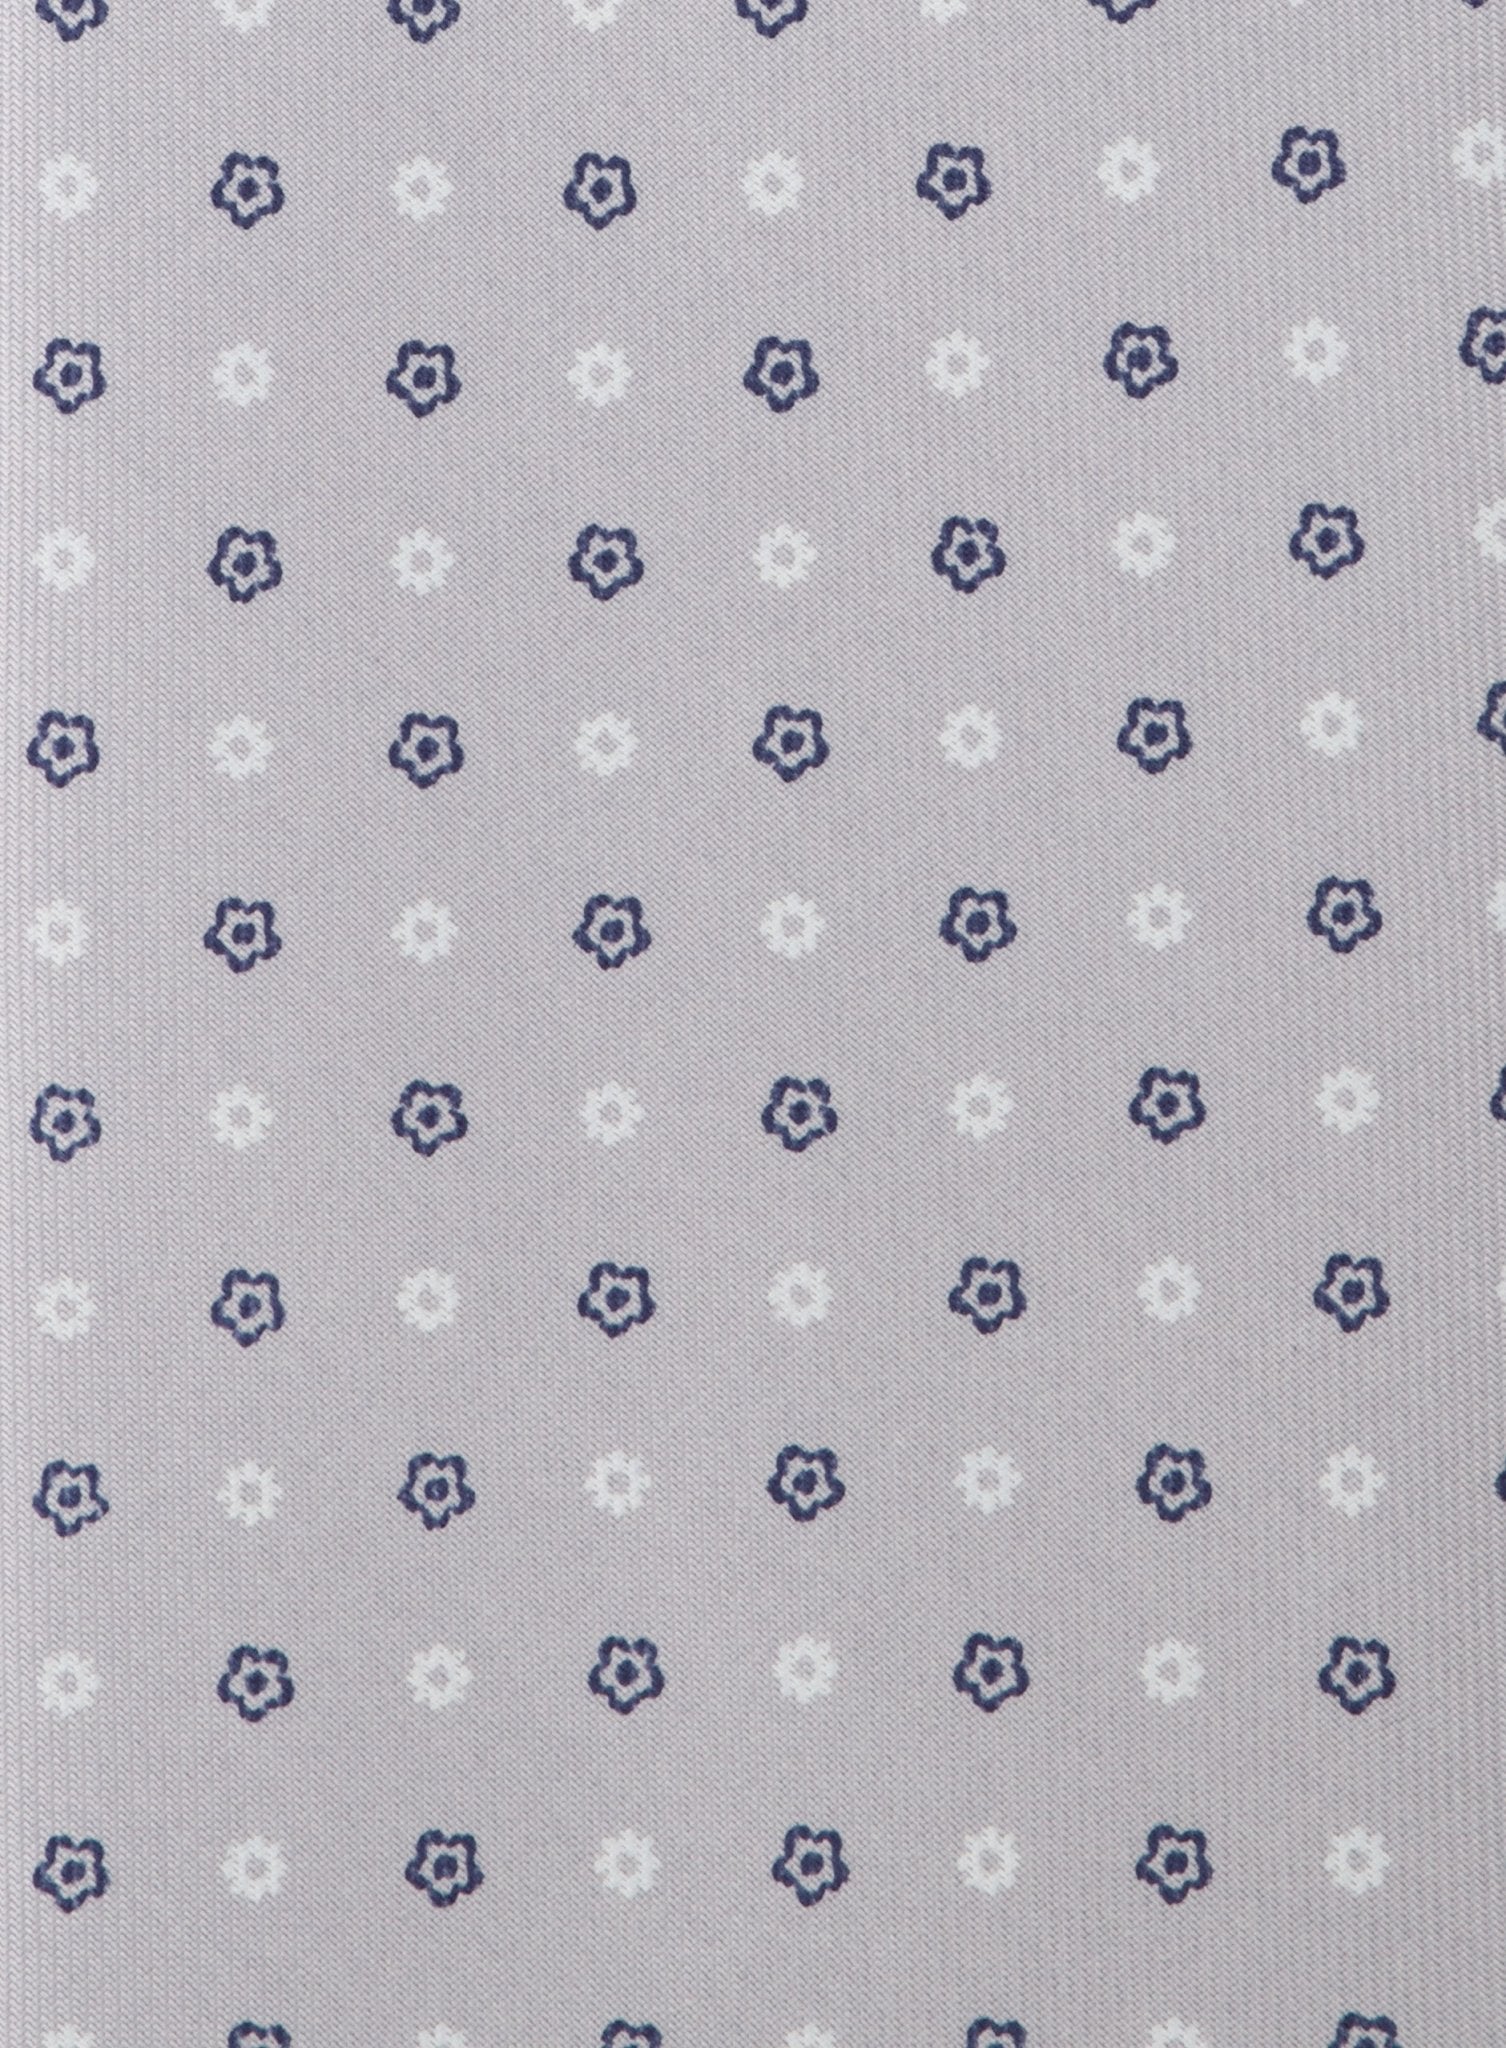 Classic stropdas met print van zijde | Grijs